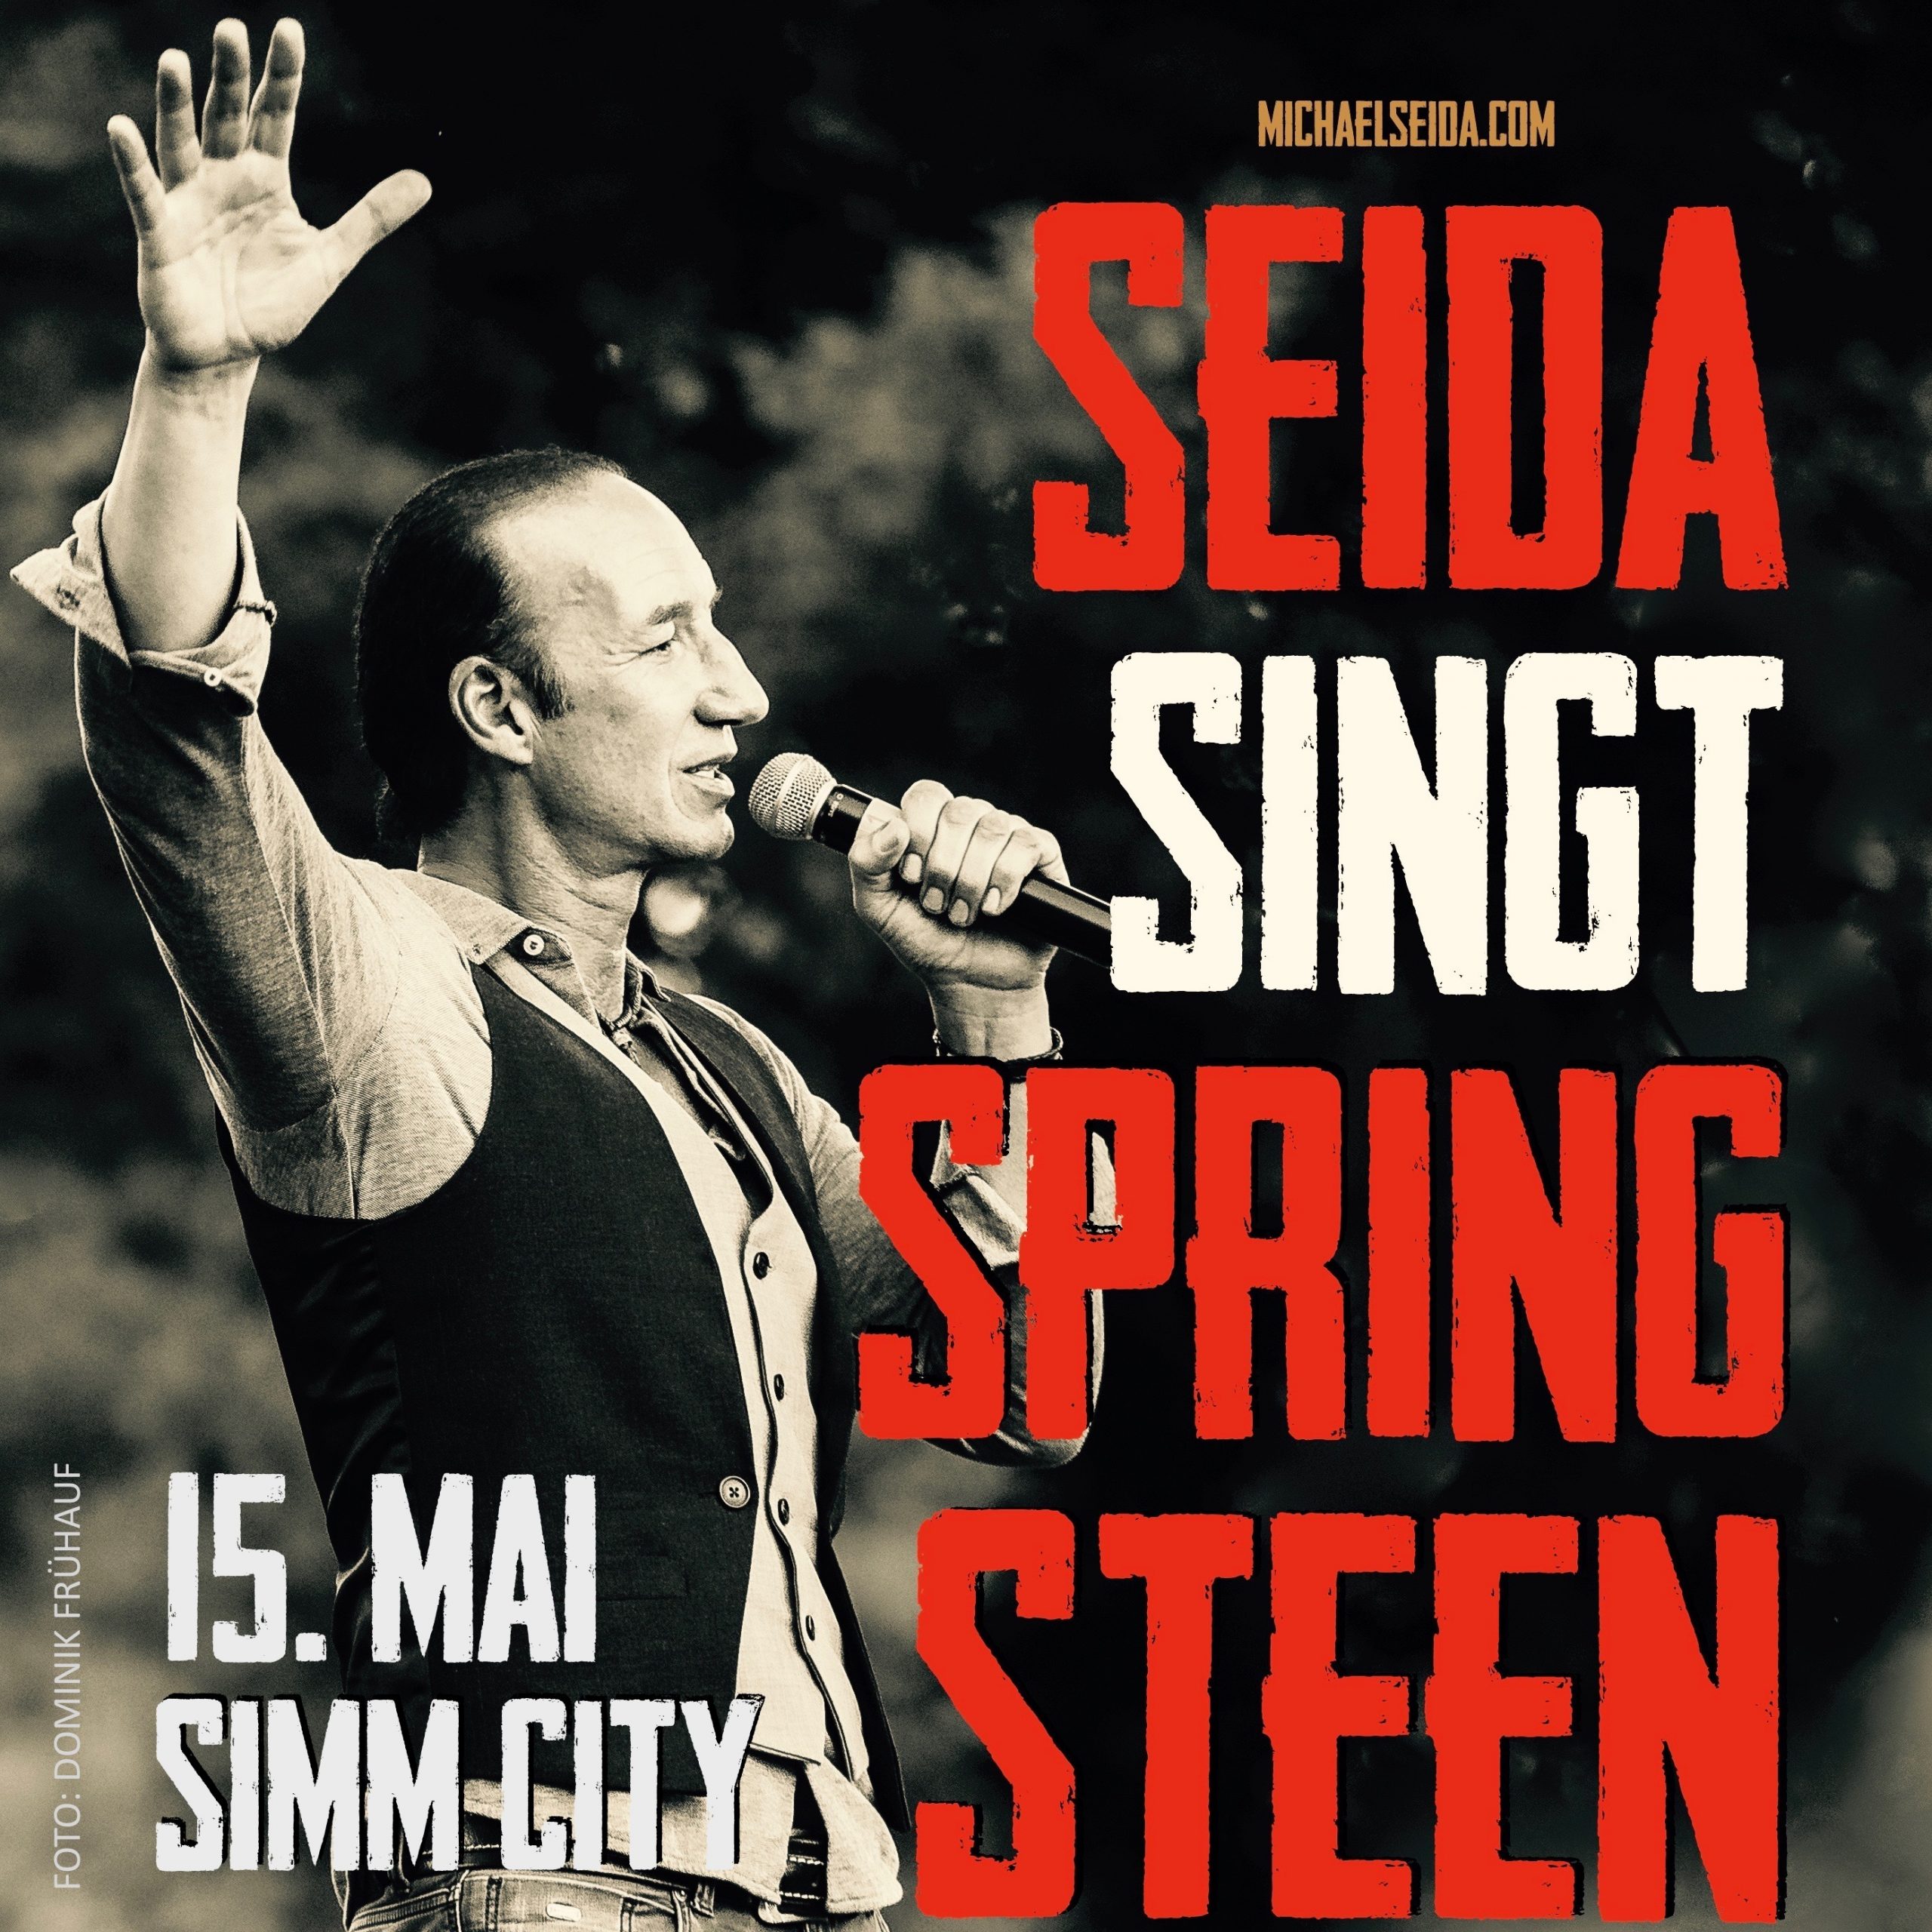 Seida singt Springsteen am 15. May 2020 @ Simm City.